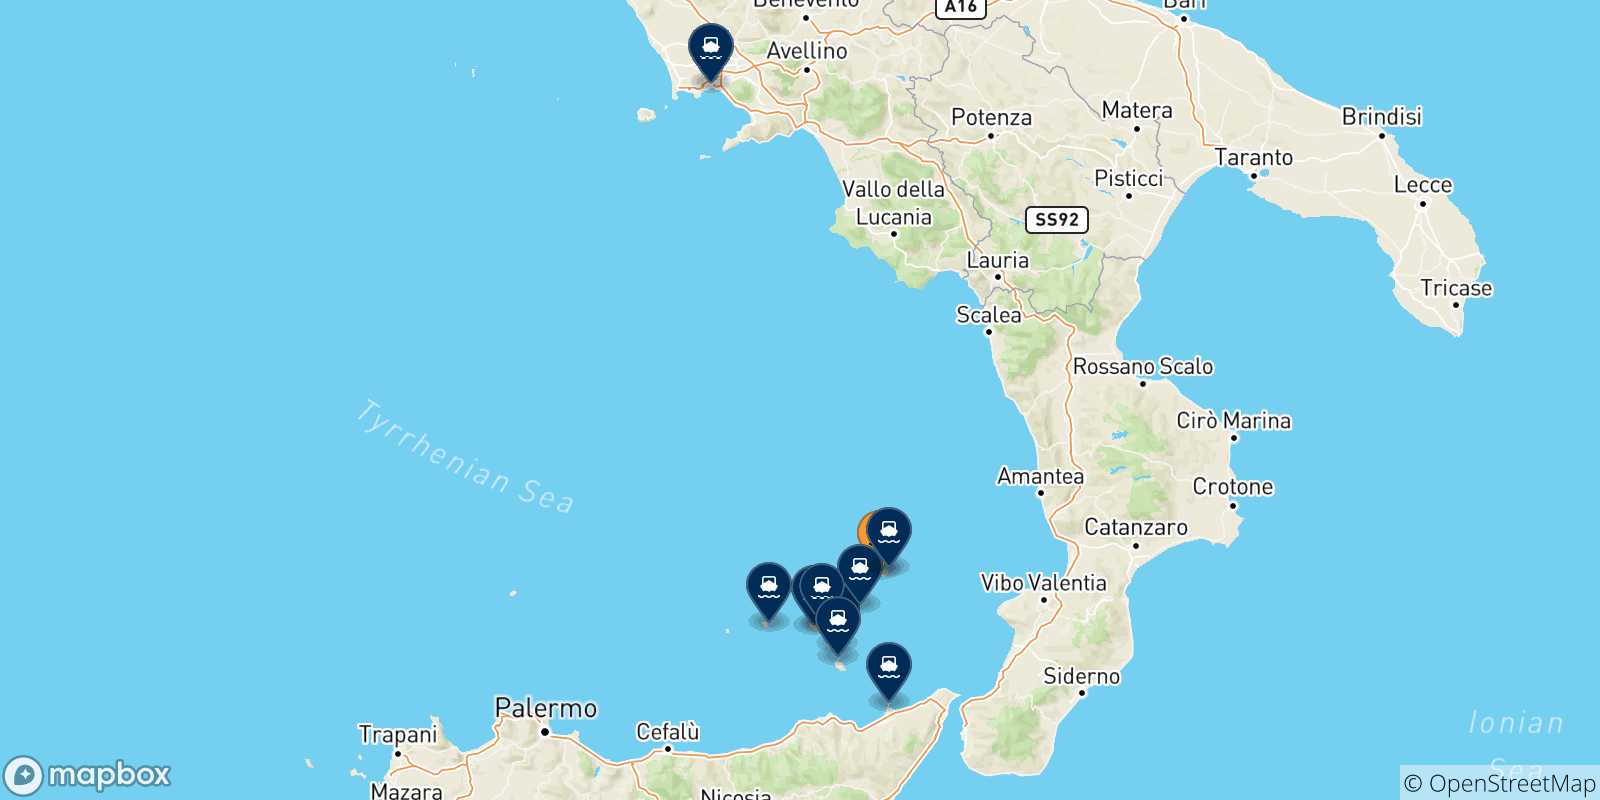 Mappa delle possibili rotte tra Ginostra (Stromboli) e l'Italia